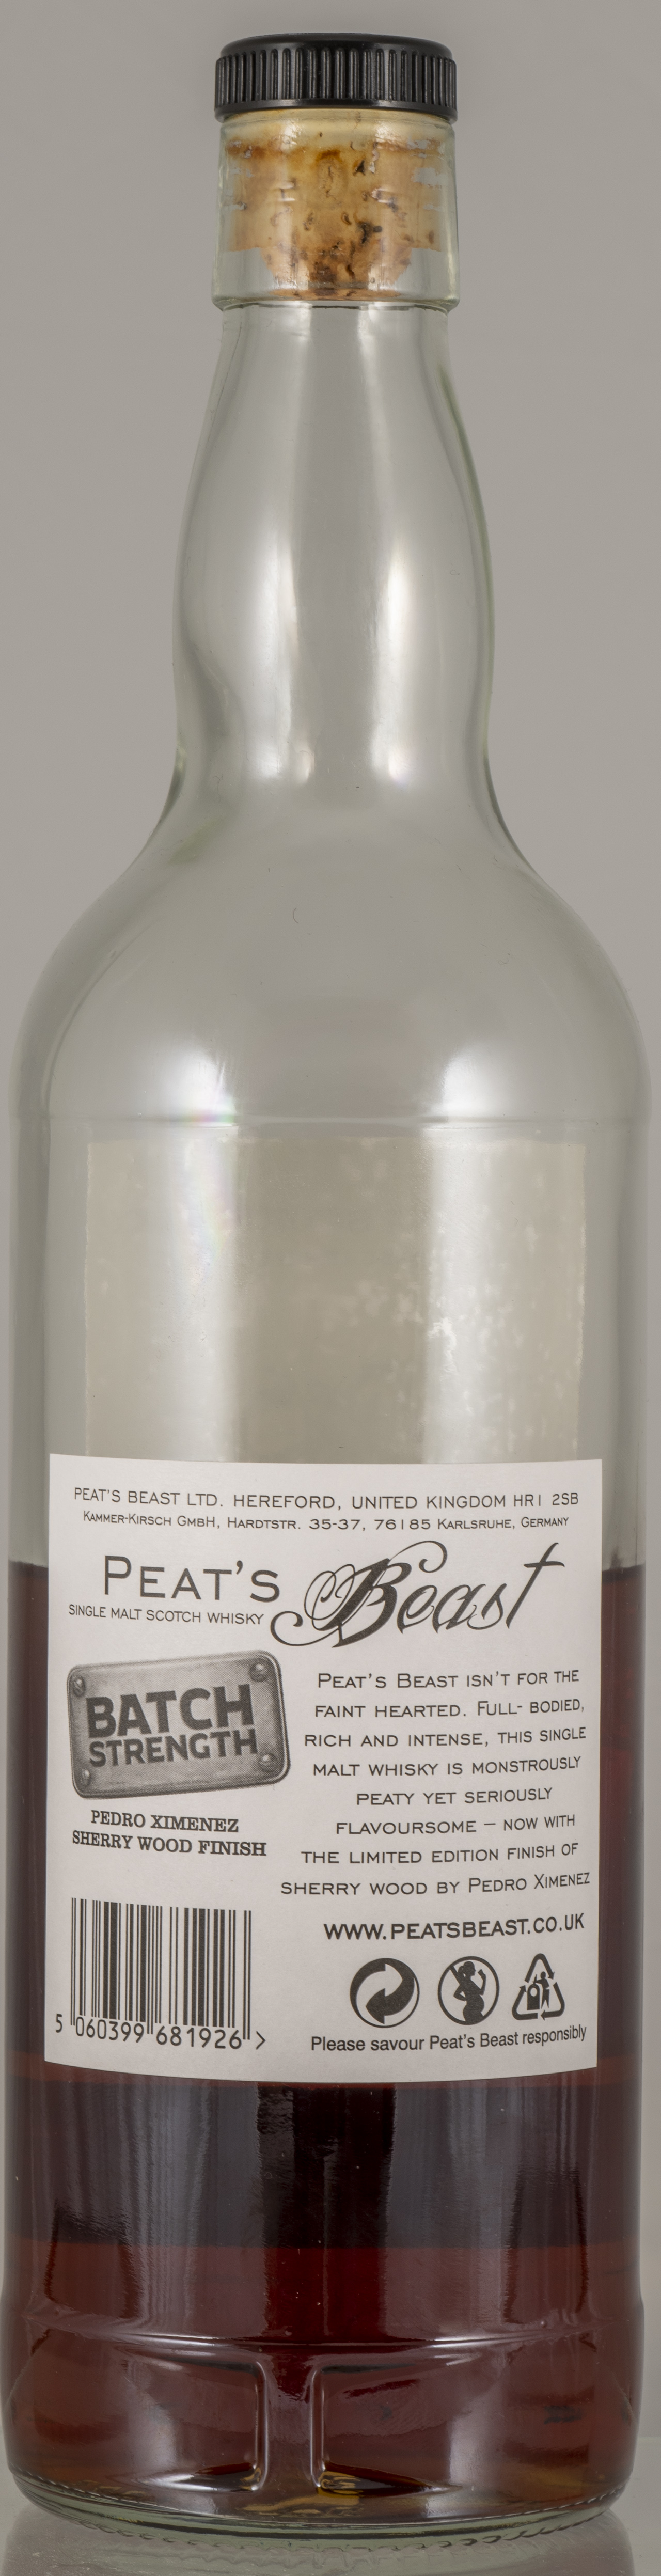 Billede: PHC_7094 - Peats Beast - bottle back.jpg